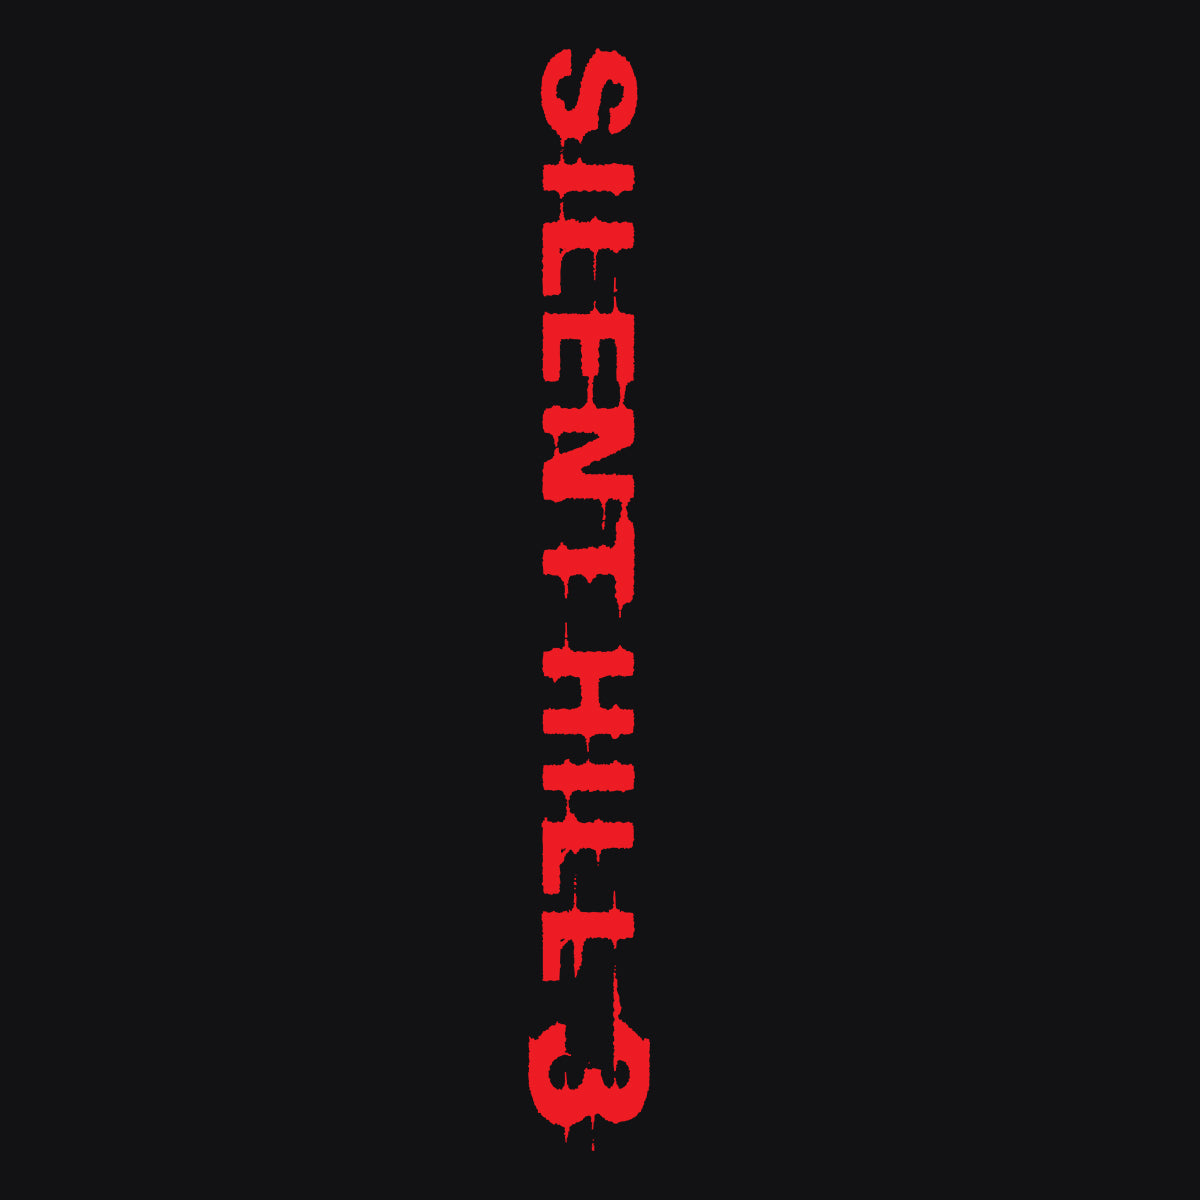 Heather Silent Hill 3 Unisex T-Shirt - Teeruto